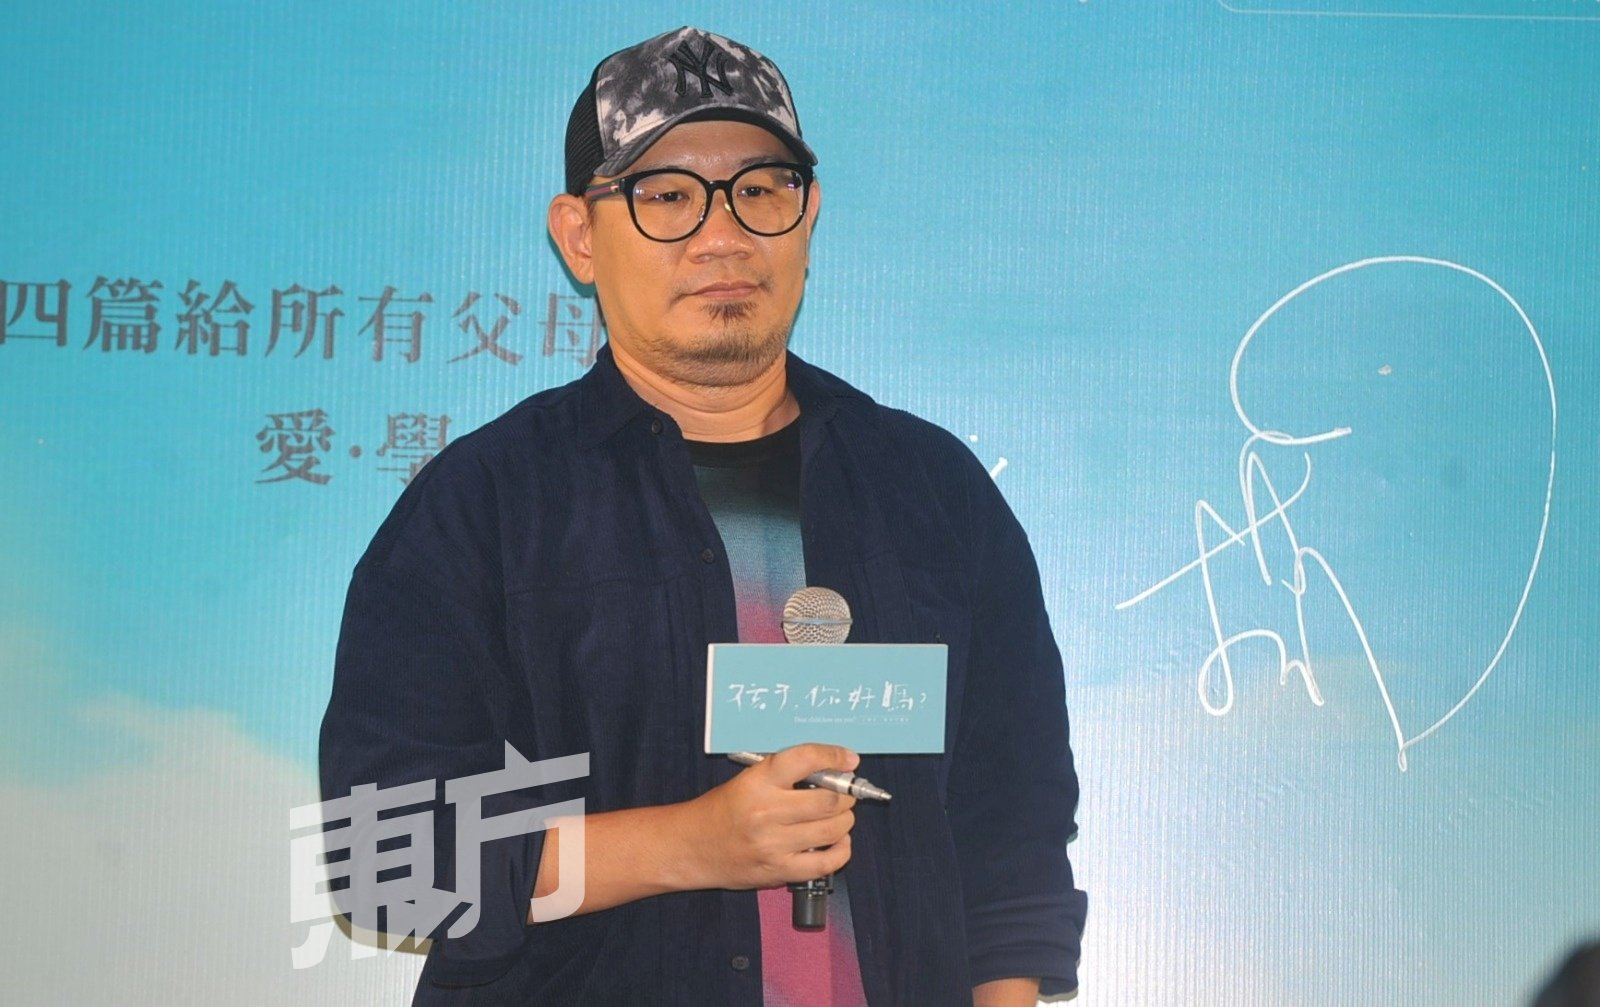 张吉安导演与李心洁是校友，这次拍纪录片他也给予对方不少拍摄景点的建议。